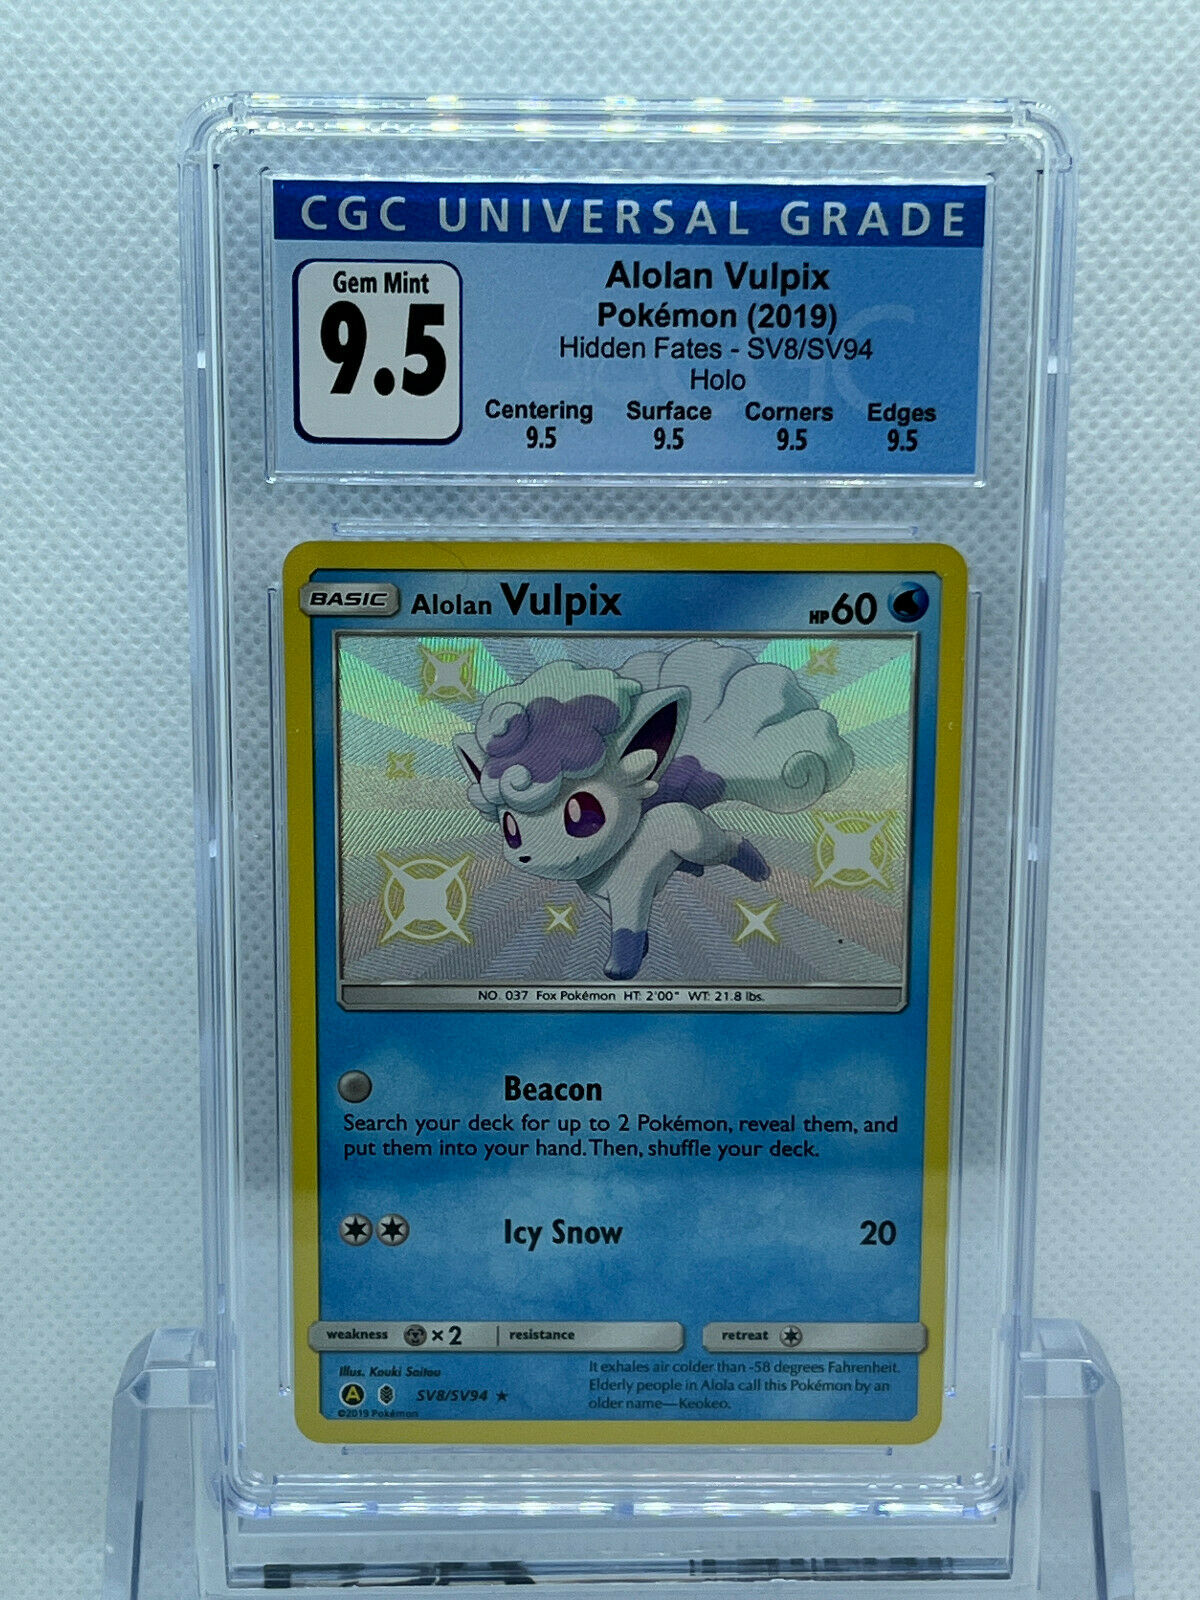 Pokémon Hidden Fates Shiny Vault SV8/SV94 Shiny Alolan Vulpix CGC 9.5 Gem Mint